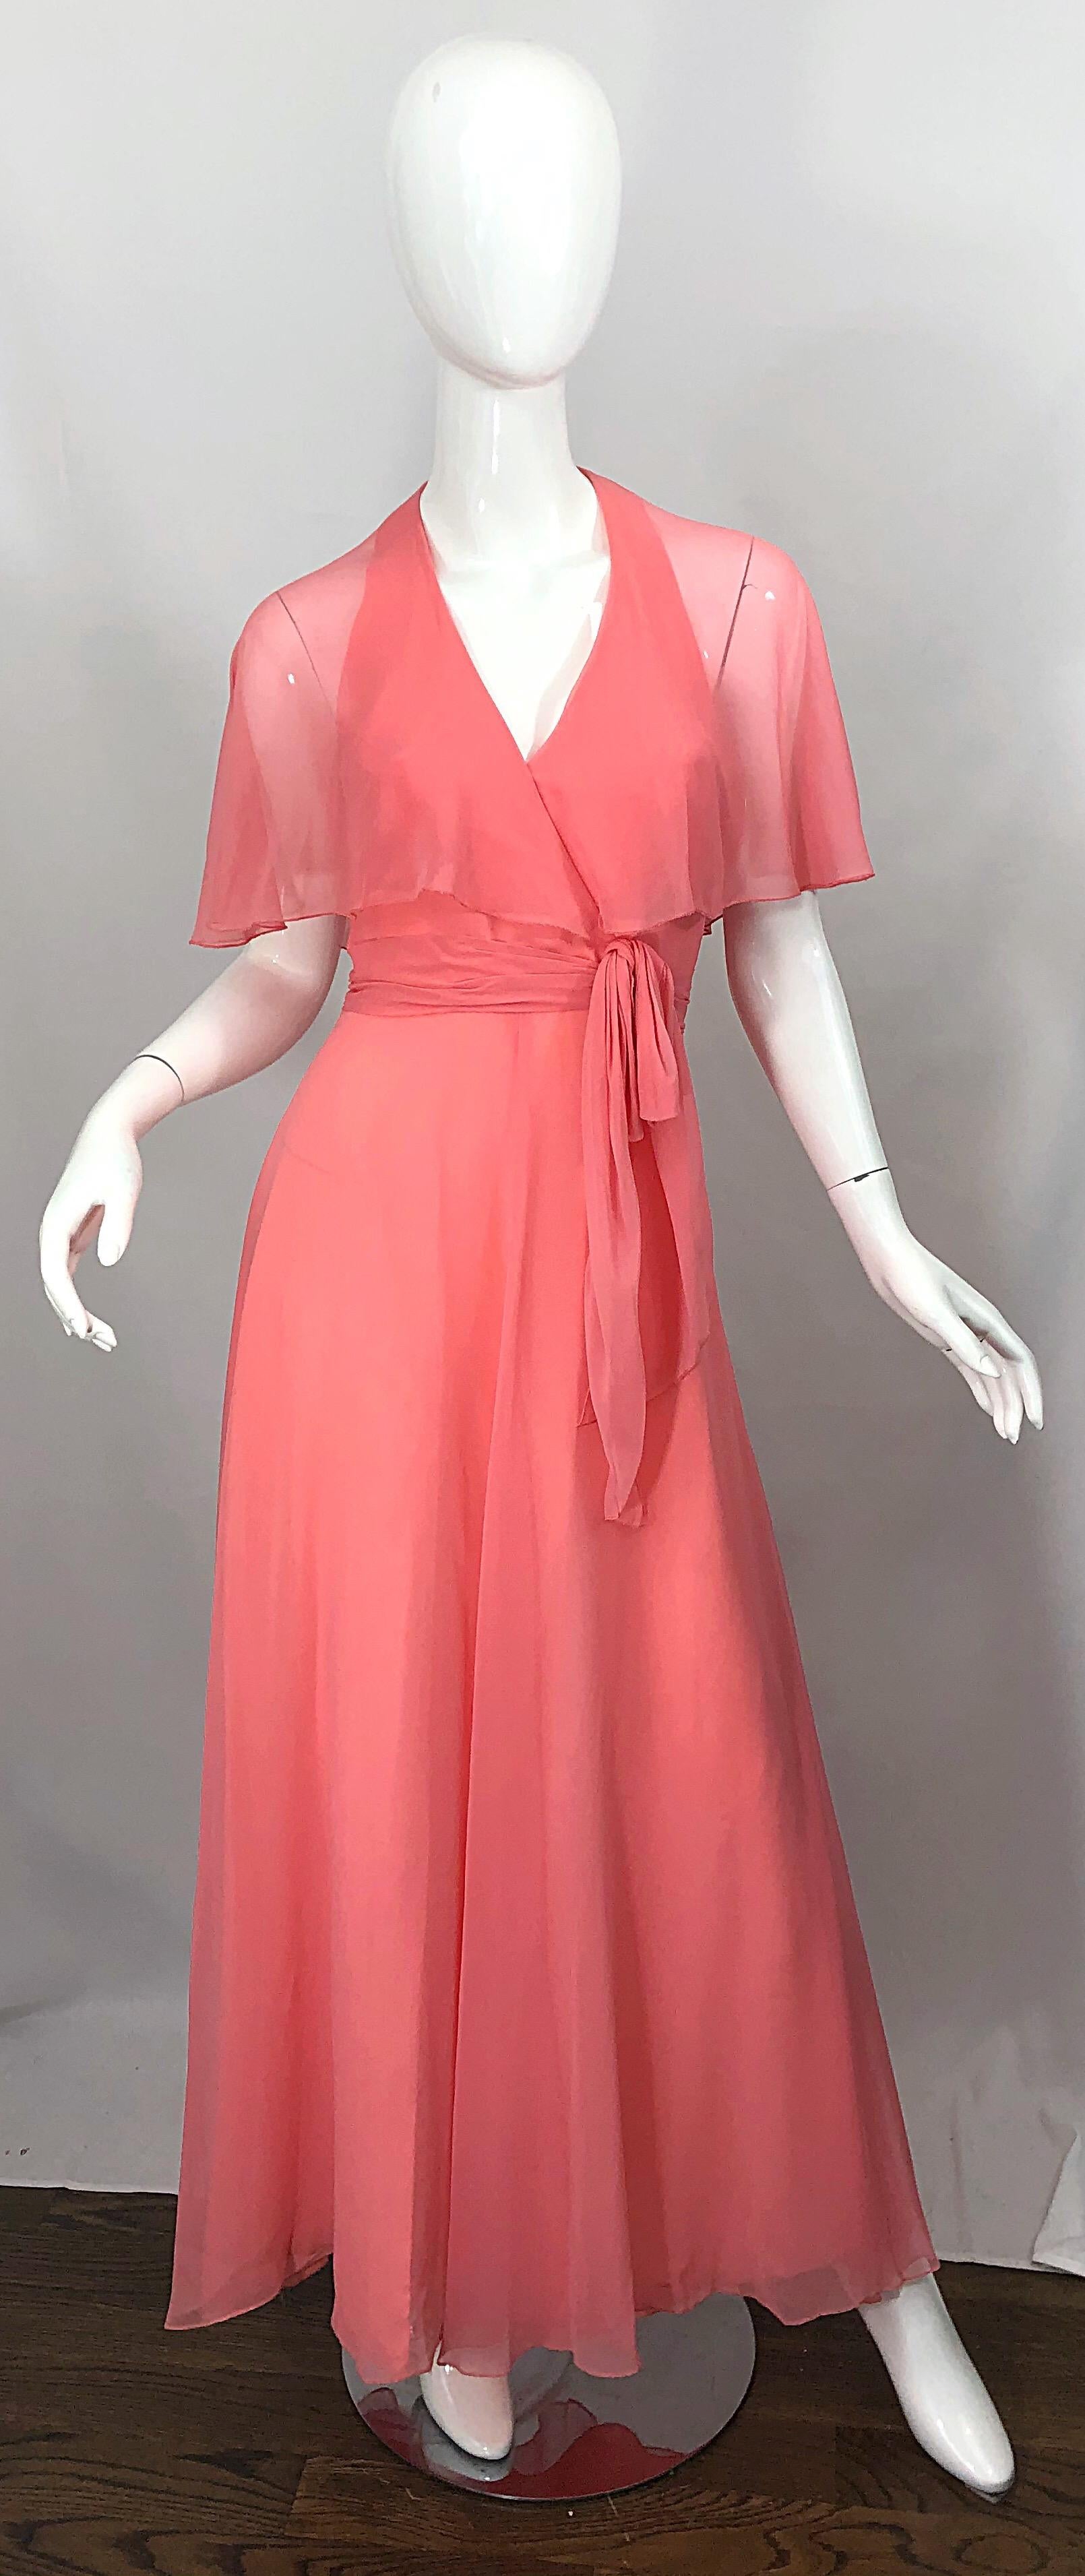 Magnifique robe maxi rose corail des années 1970 avec caplet transparent attaché ! Il est doté d'un cou en licou et de deux bretelles spaghetti dans le dos pour offrir un soutien supplémentaire. Ceinture en ceinture nouée à la taille gauche. Corsage